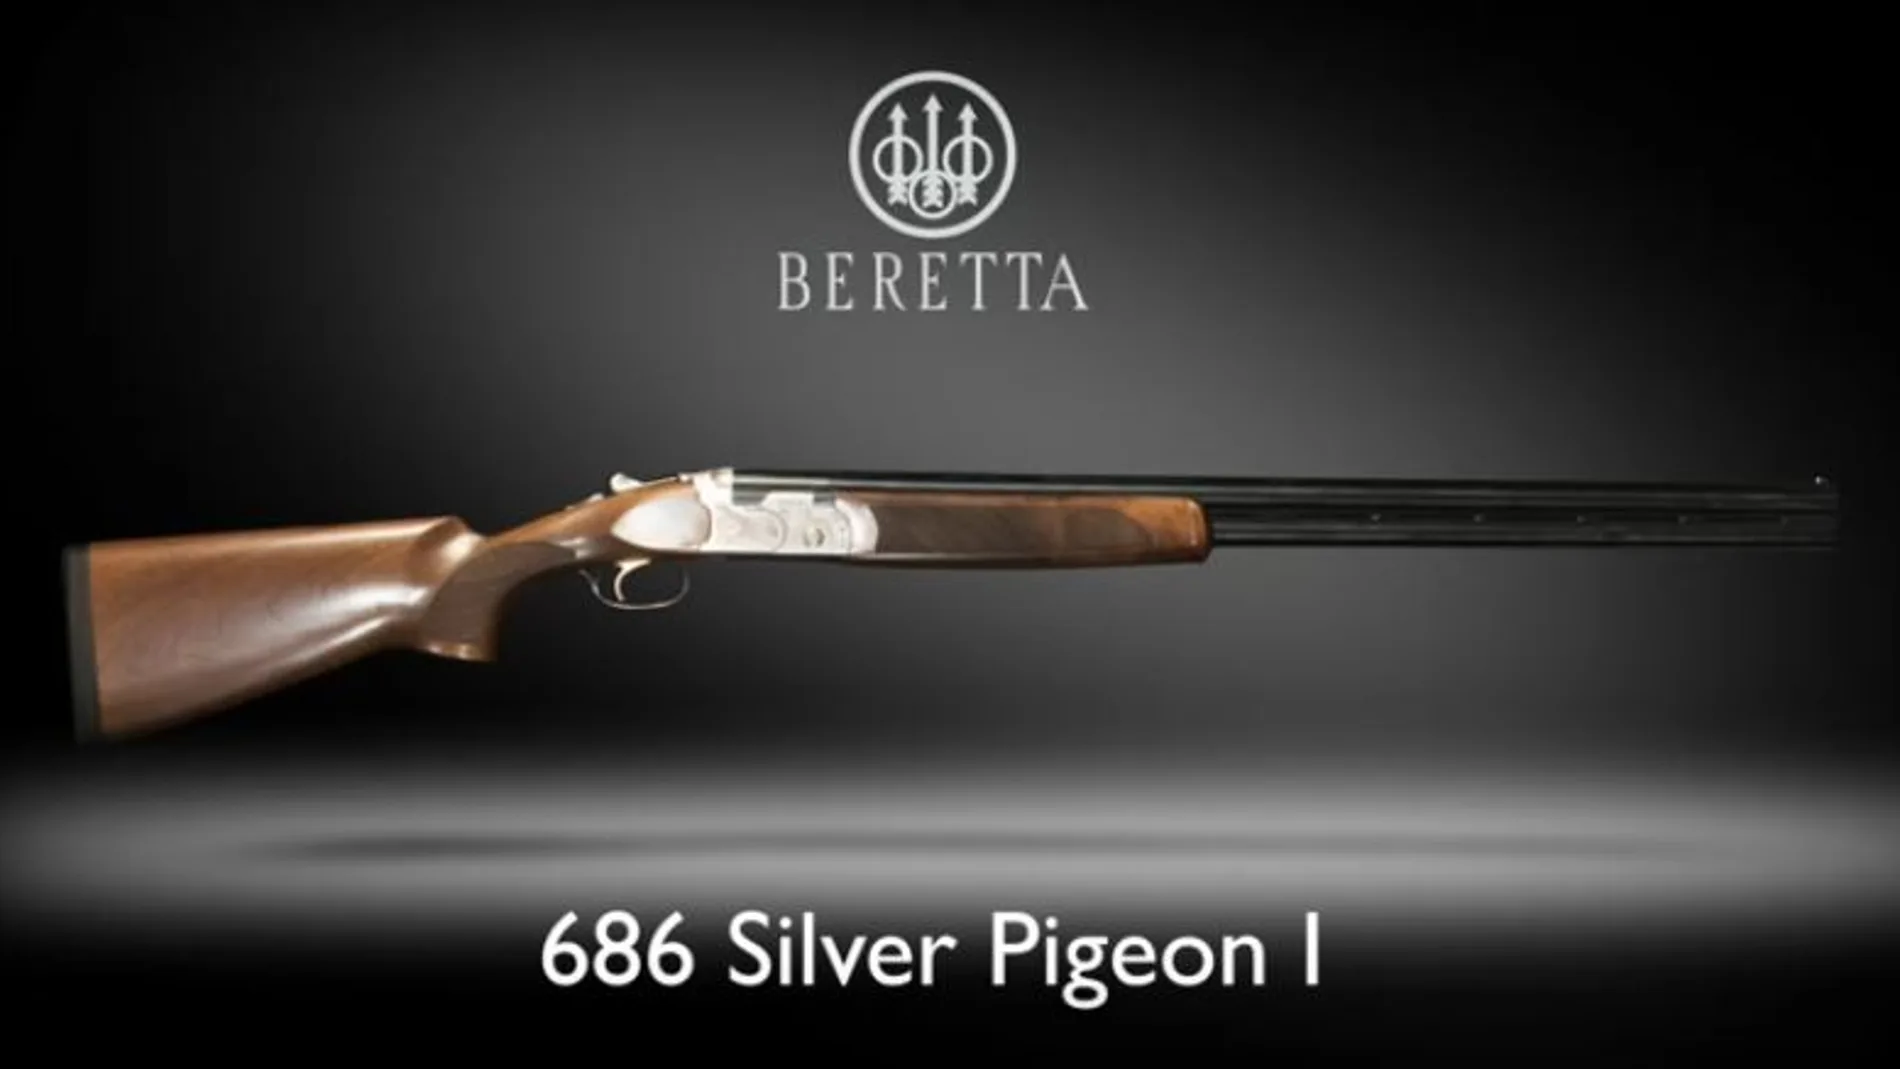 El arma de la menor, una Beretta 686 Silver Pigeon